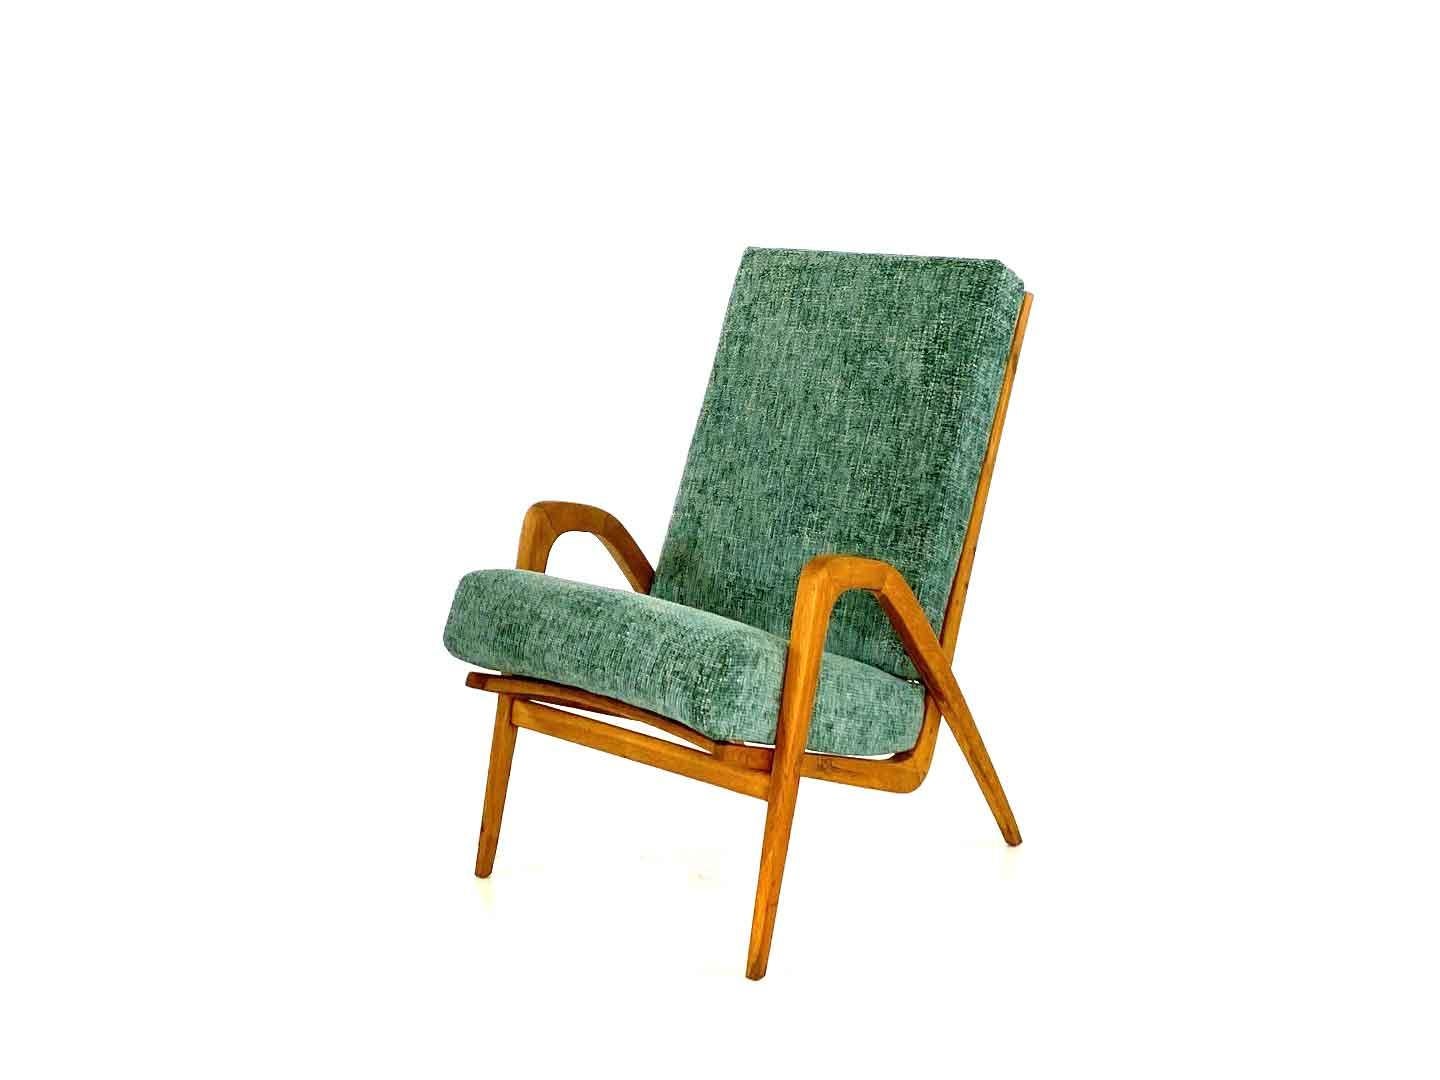 Fauteuil vintage unique conçu par Jan Vanek pour Úl'uv dans l'ancienne Tchécoslovaquie dans les années 1960. La structure minimaliste en chêne offre un grand confort d'assise et fait de ce fauteuil un véritable accroche-regard. Le fauteuil a été